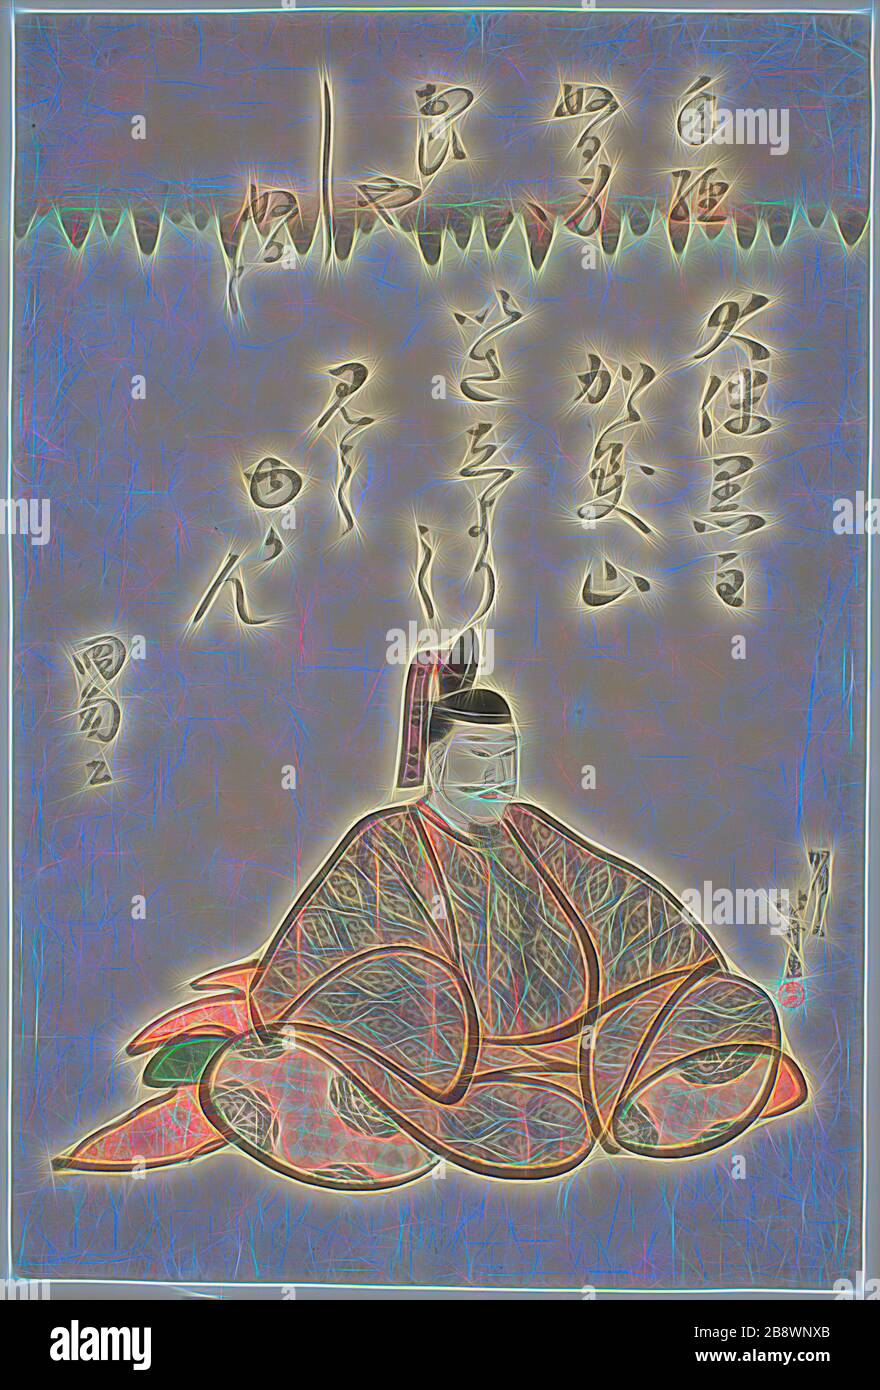 Le Poet Otomo no Kuronushi, de la série six Immortal Poets (Rokkasen), c. 1810, Katsushika Hokusai ?? ??, Japonais, 1760-1849, Japon, imprimé color woodblock, oban, 37,7 x 25,3 cm, repensé par Gibon, design de glanissement chaleureux et gai de la luminosité et des rayons de lumière radiance. L'art classique réinventé avec une touche moderne. La photographie inspirée du futurisme, qui embrasse l'énergie dynamique de la technologie moderne, du mouvement, de la vitesse et révolutionne la culture. Banque D'Images